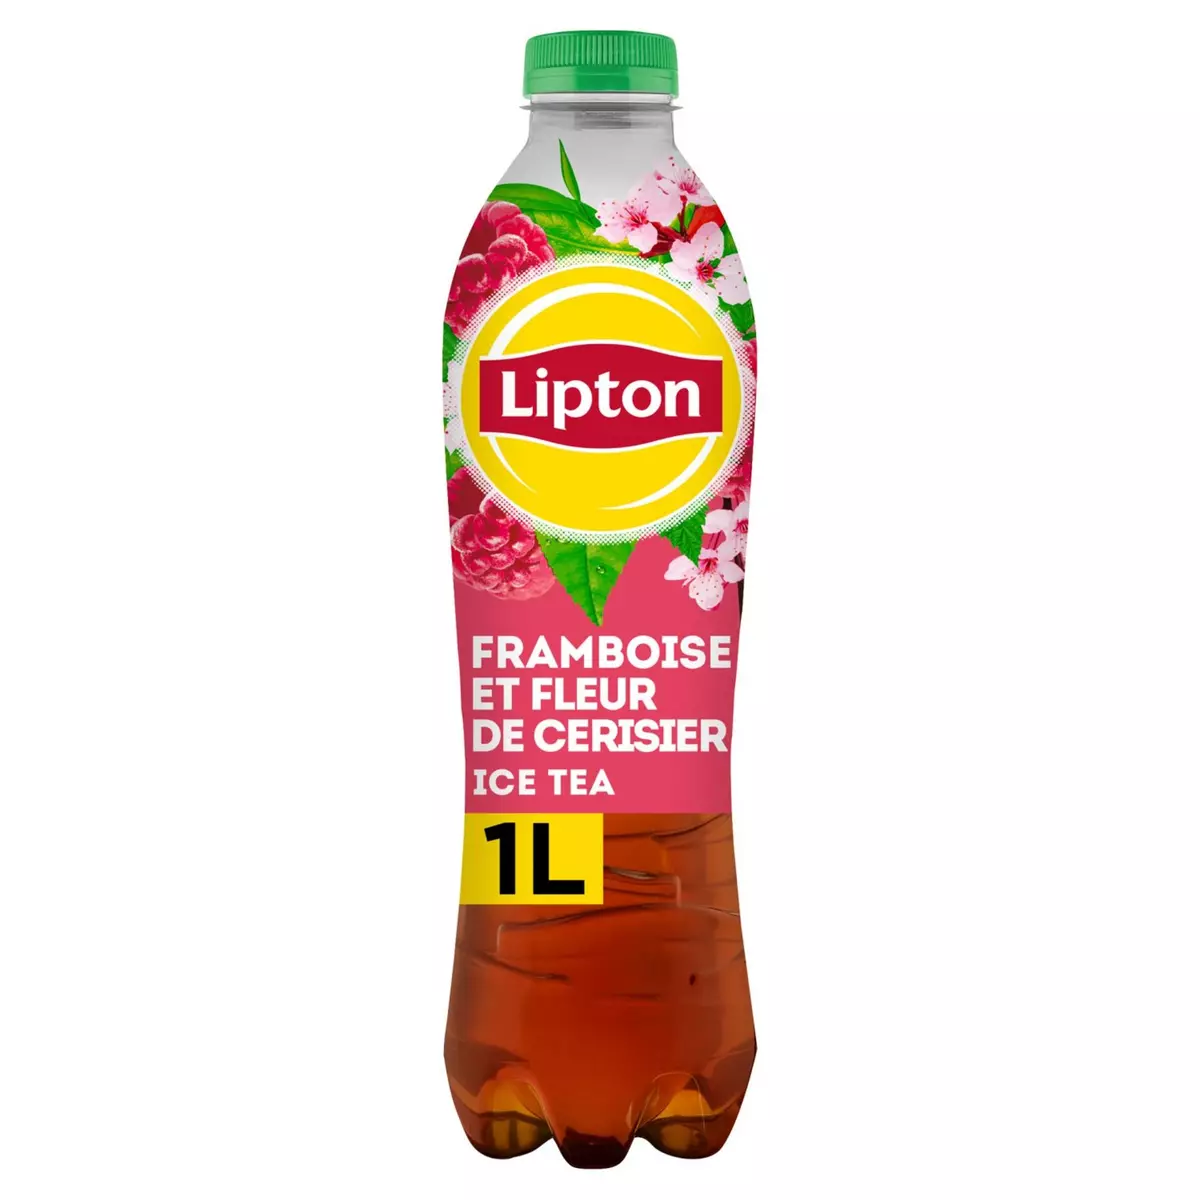 LIPTON Boisson à base de thé Ice Tea saveur framboise et fleur de cerisier 1l